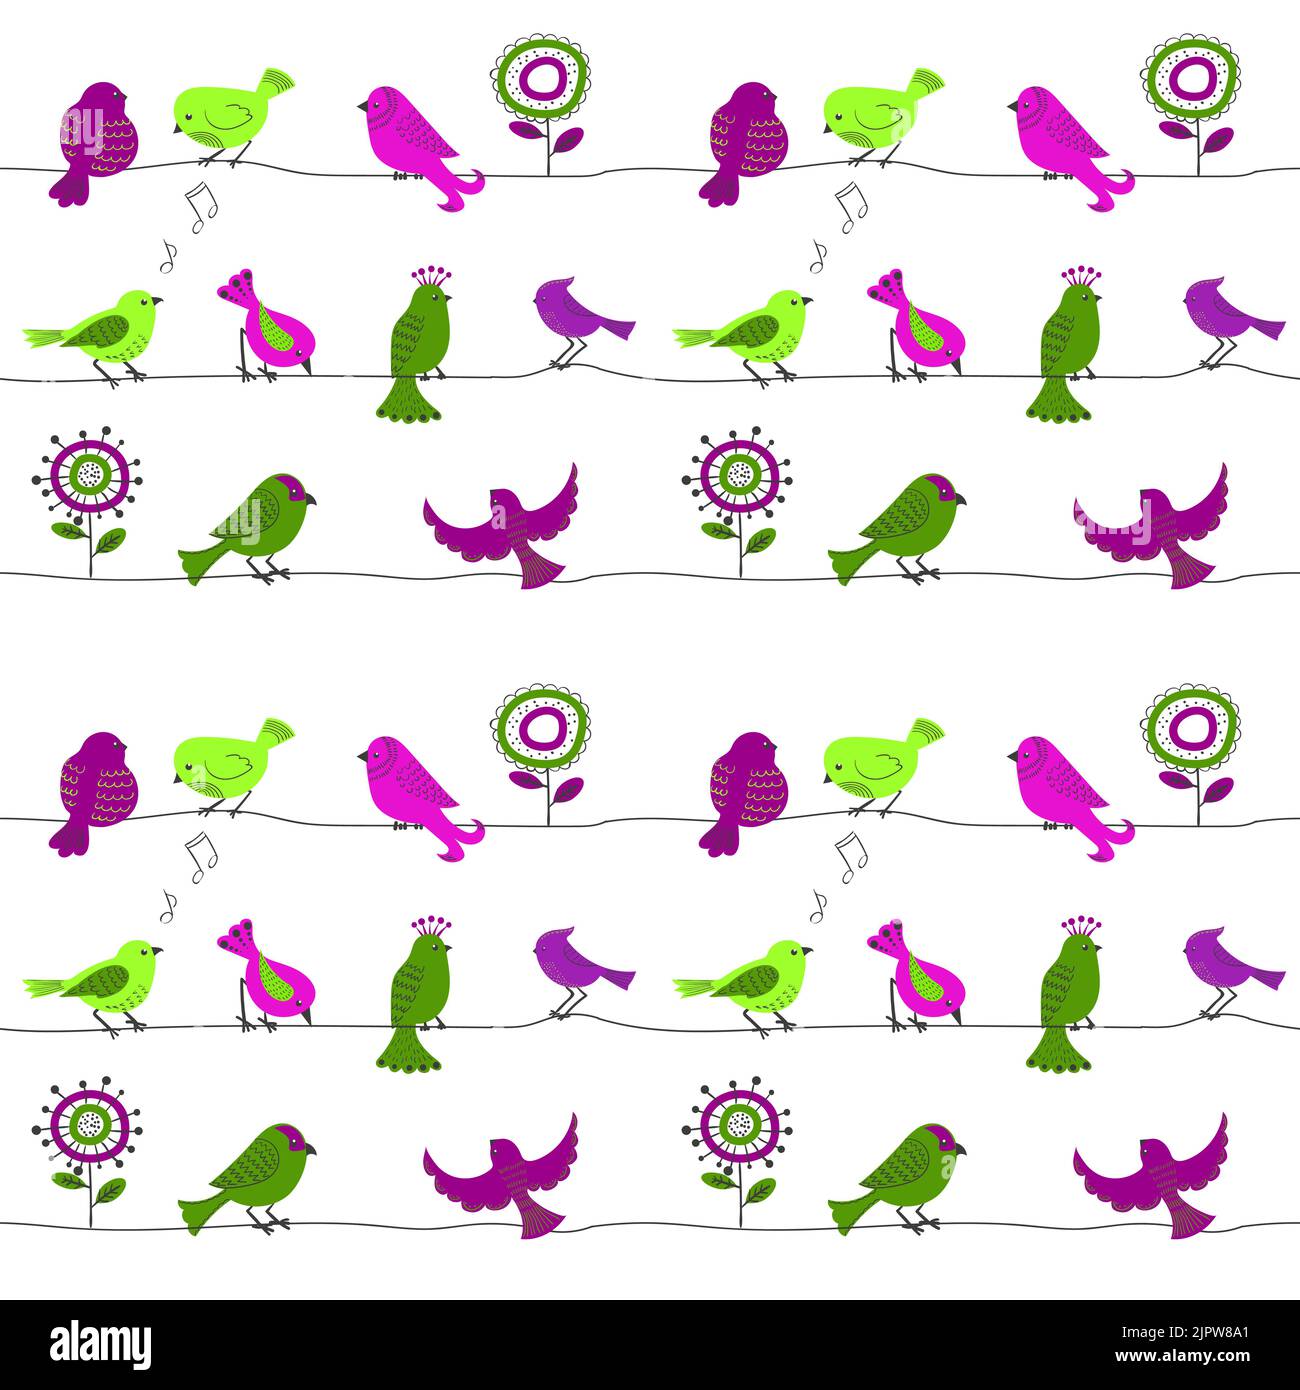 Vögel auf einem Draht. Nahtloses Muster mit niedlichen Cartoon-Vögeln in grünen und violetten Farben. Vektorhintergrund Stock Vektor